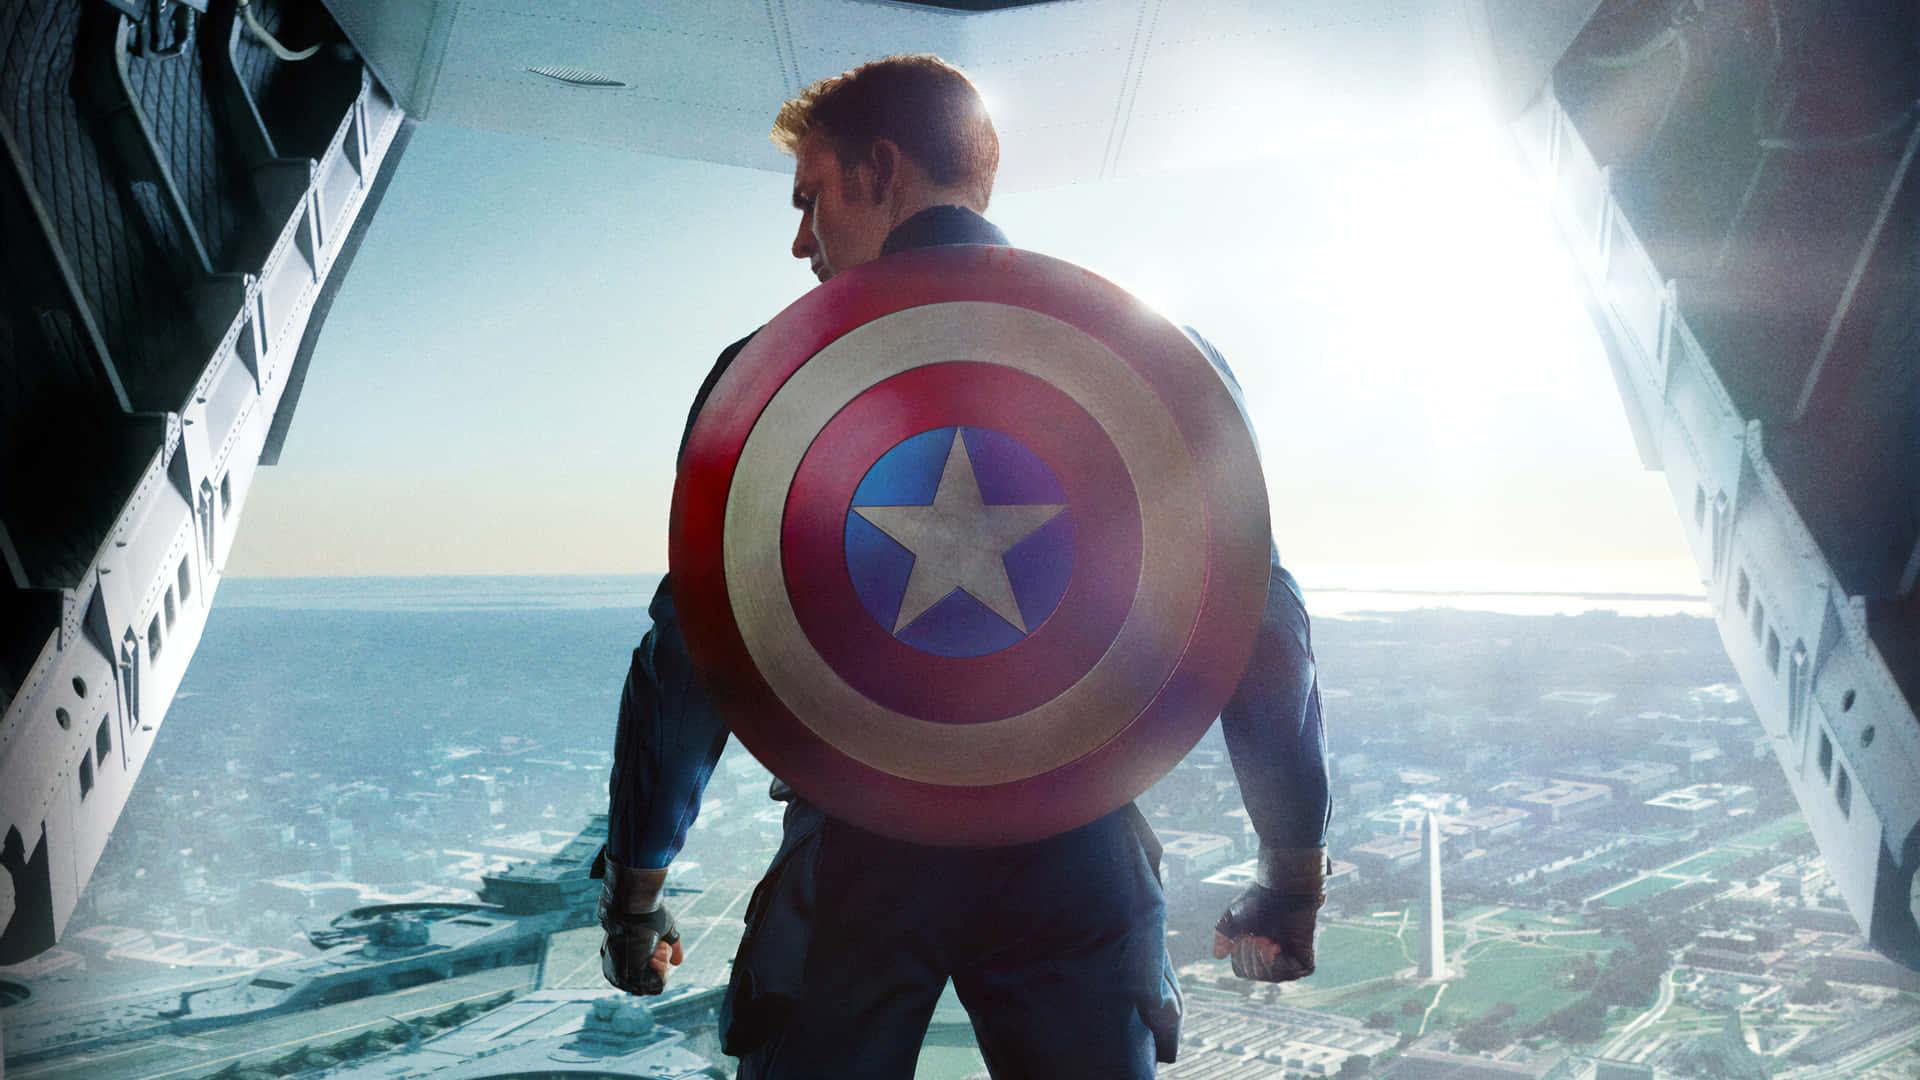 Uniscitia Captain America Nella Lotta Contro Il Male. Sfondo